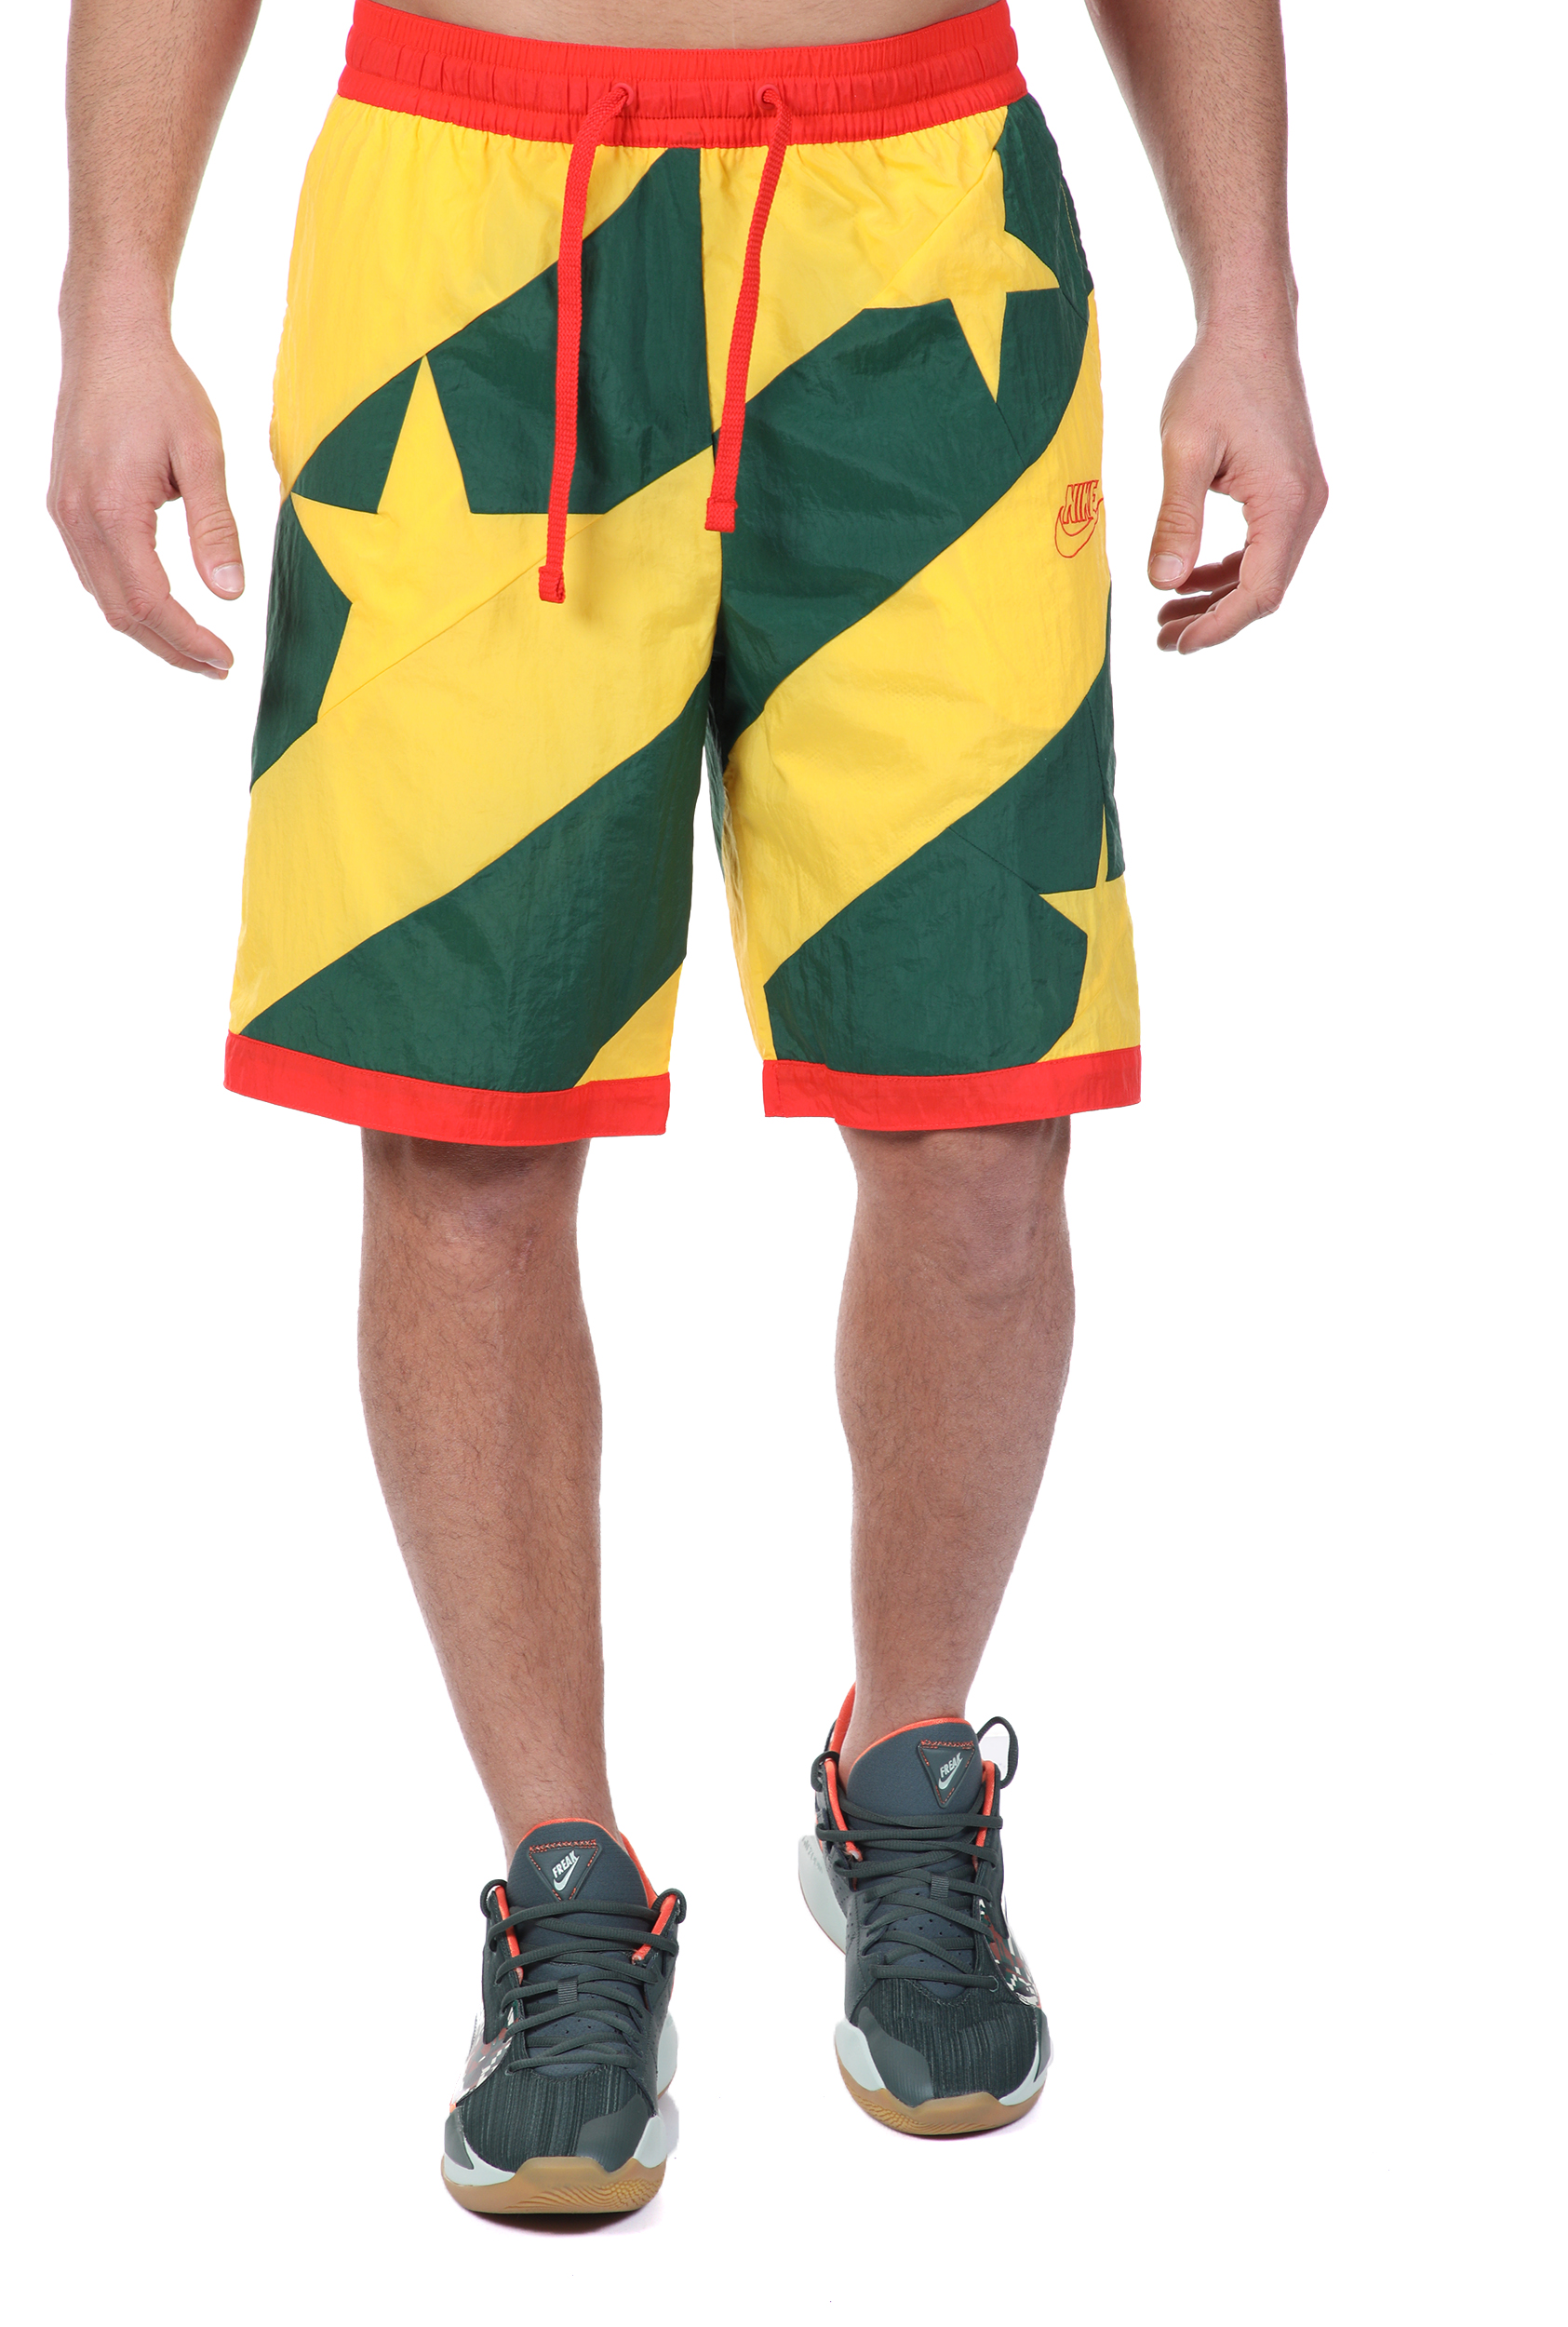 Ανδρικά/Ρούχα/Σορτς-Βερμούδες/Αθλητικά NIKE - Ανδρική βερμούδα NIKE THROWBACK πράσινη κίτρινη